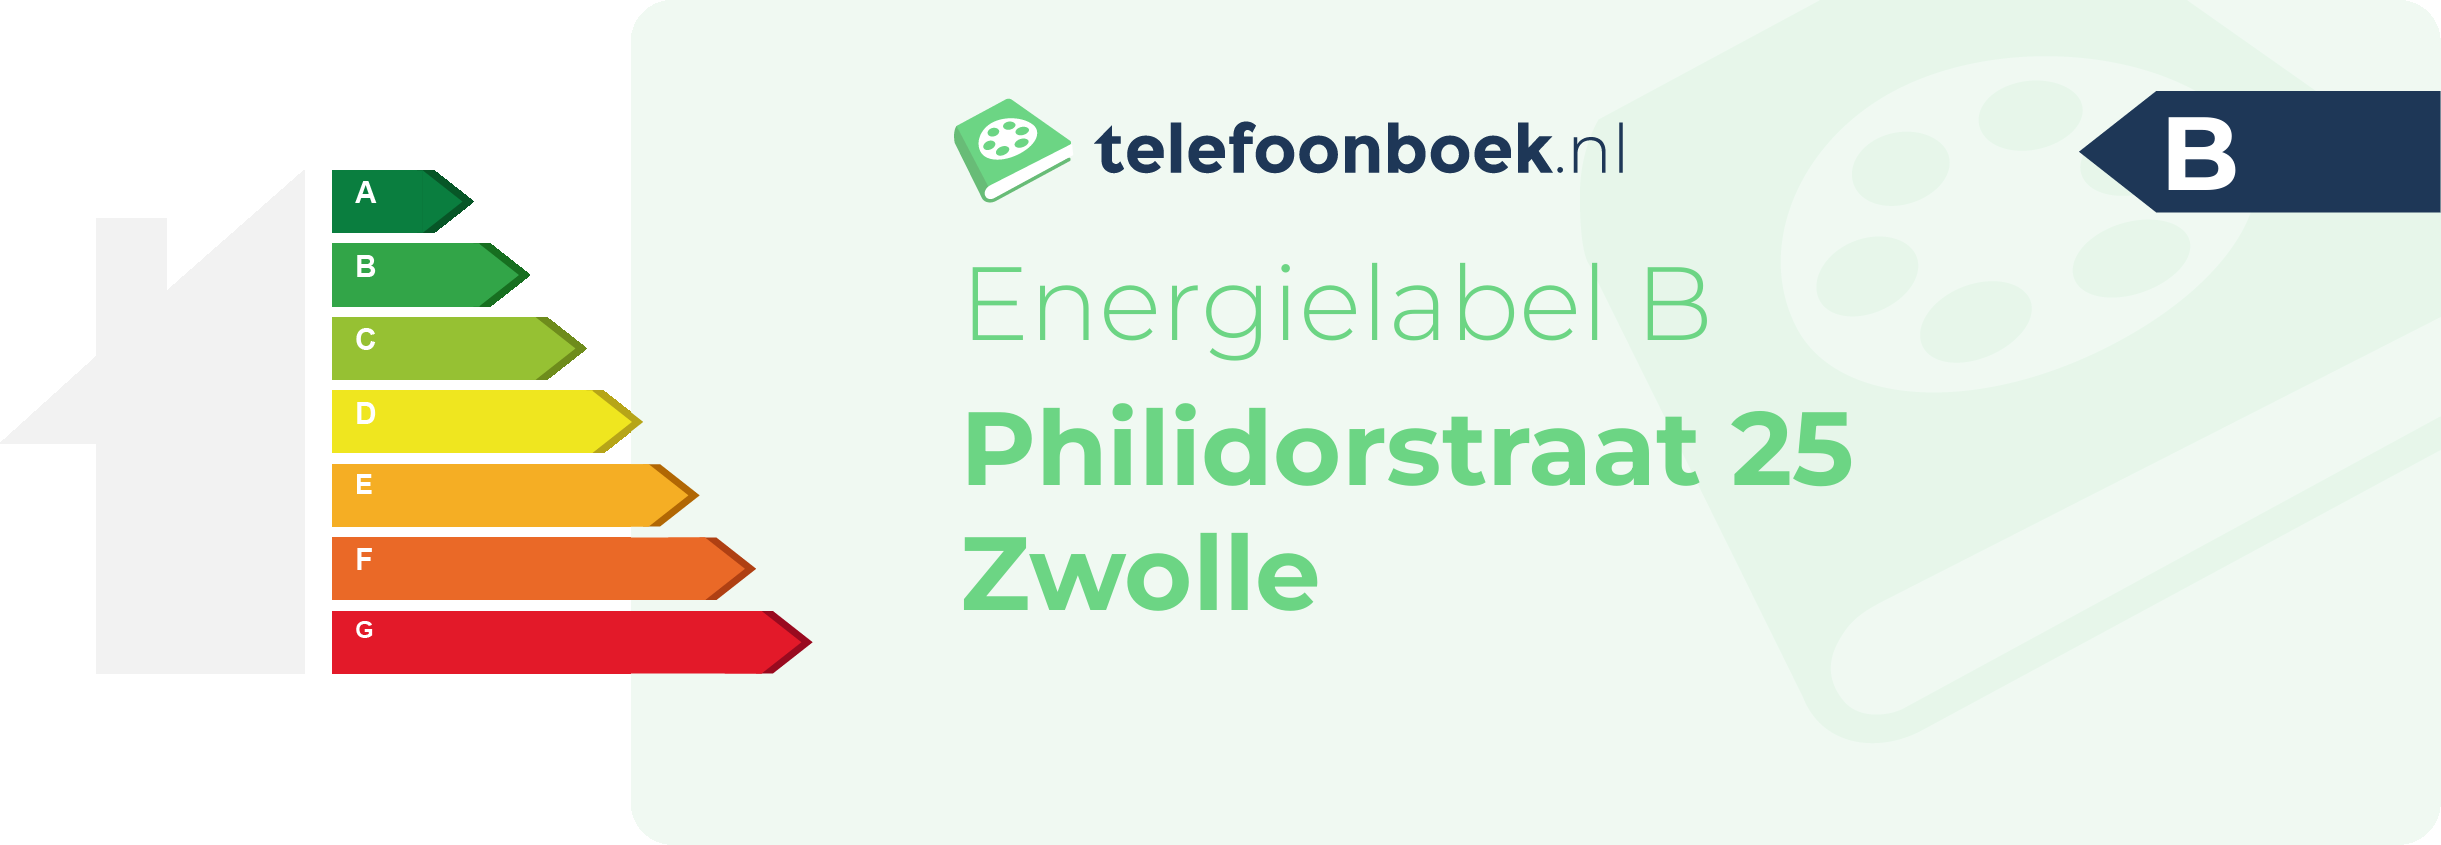 Energielabel Philidorstraat 25 Zwolle